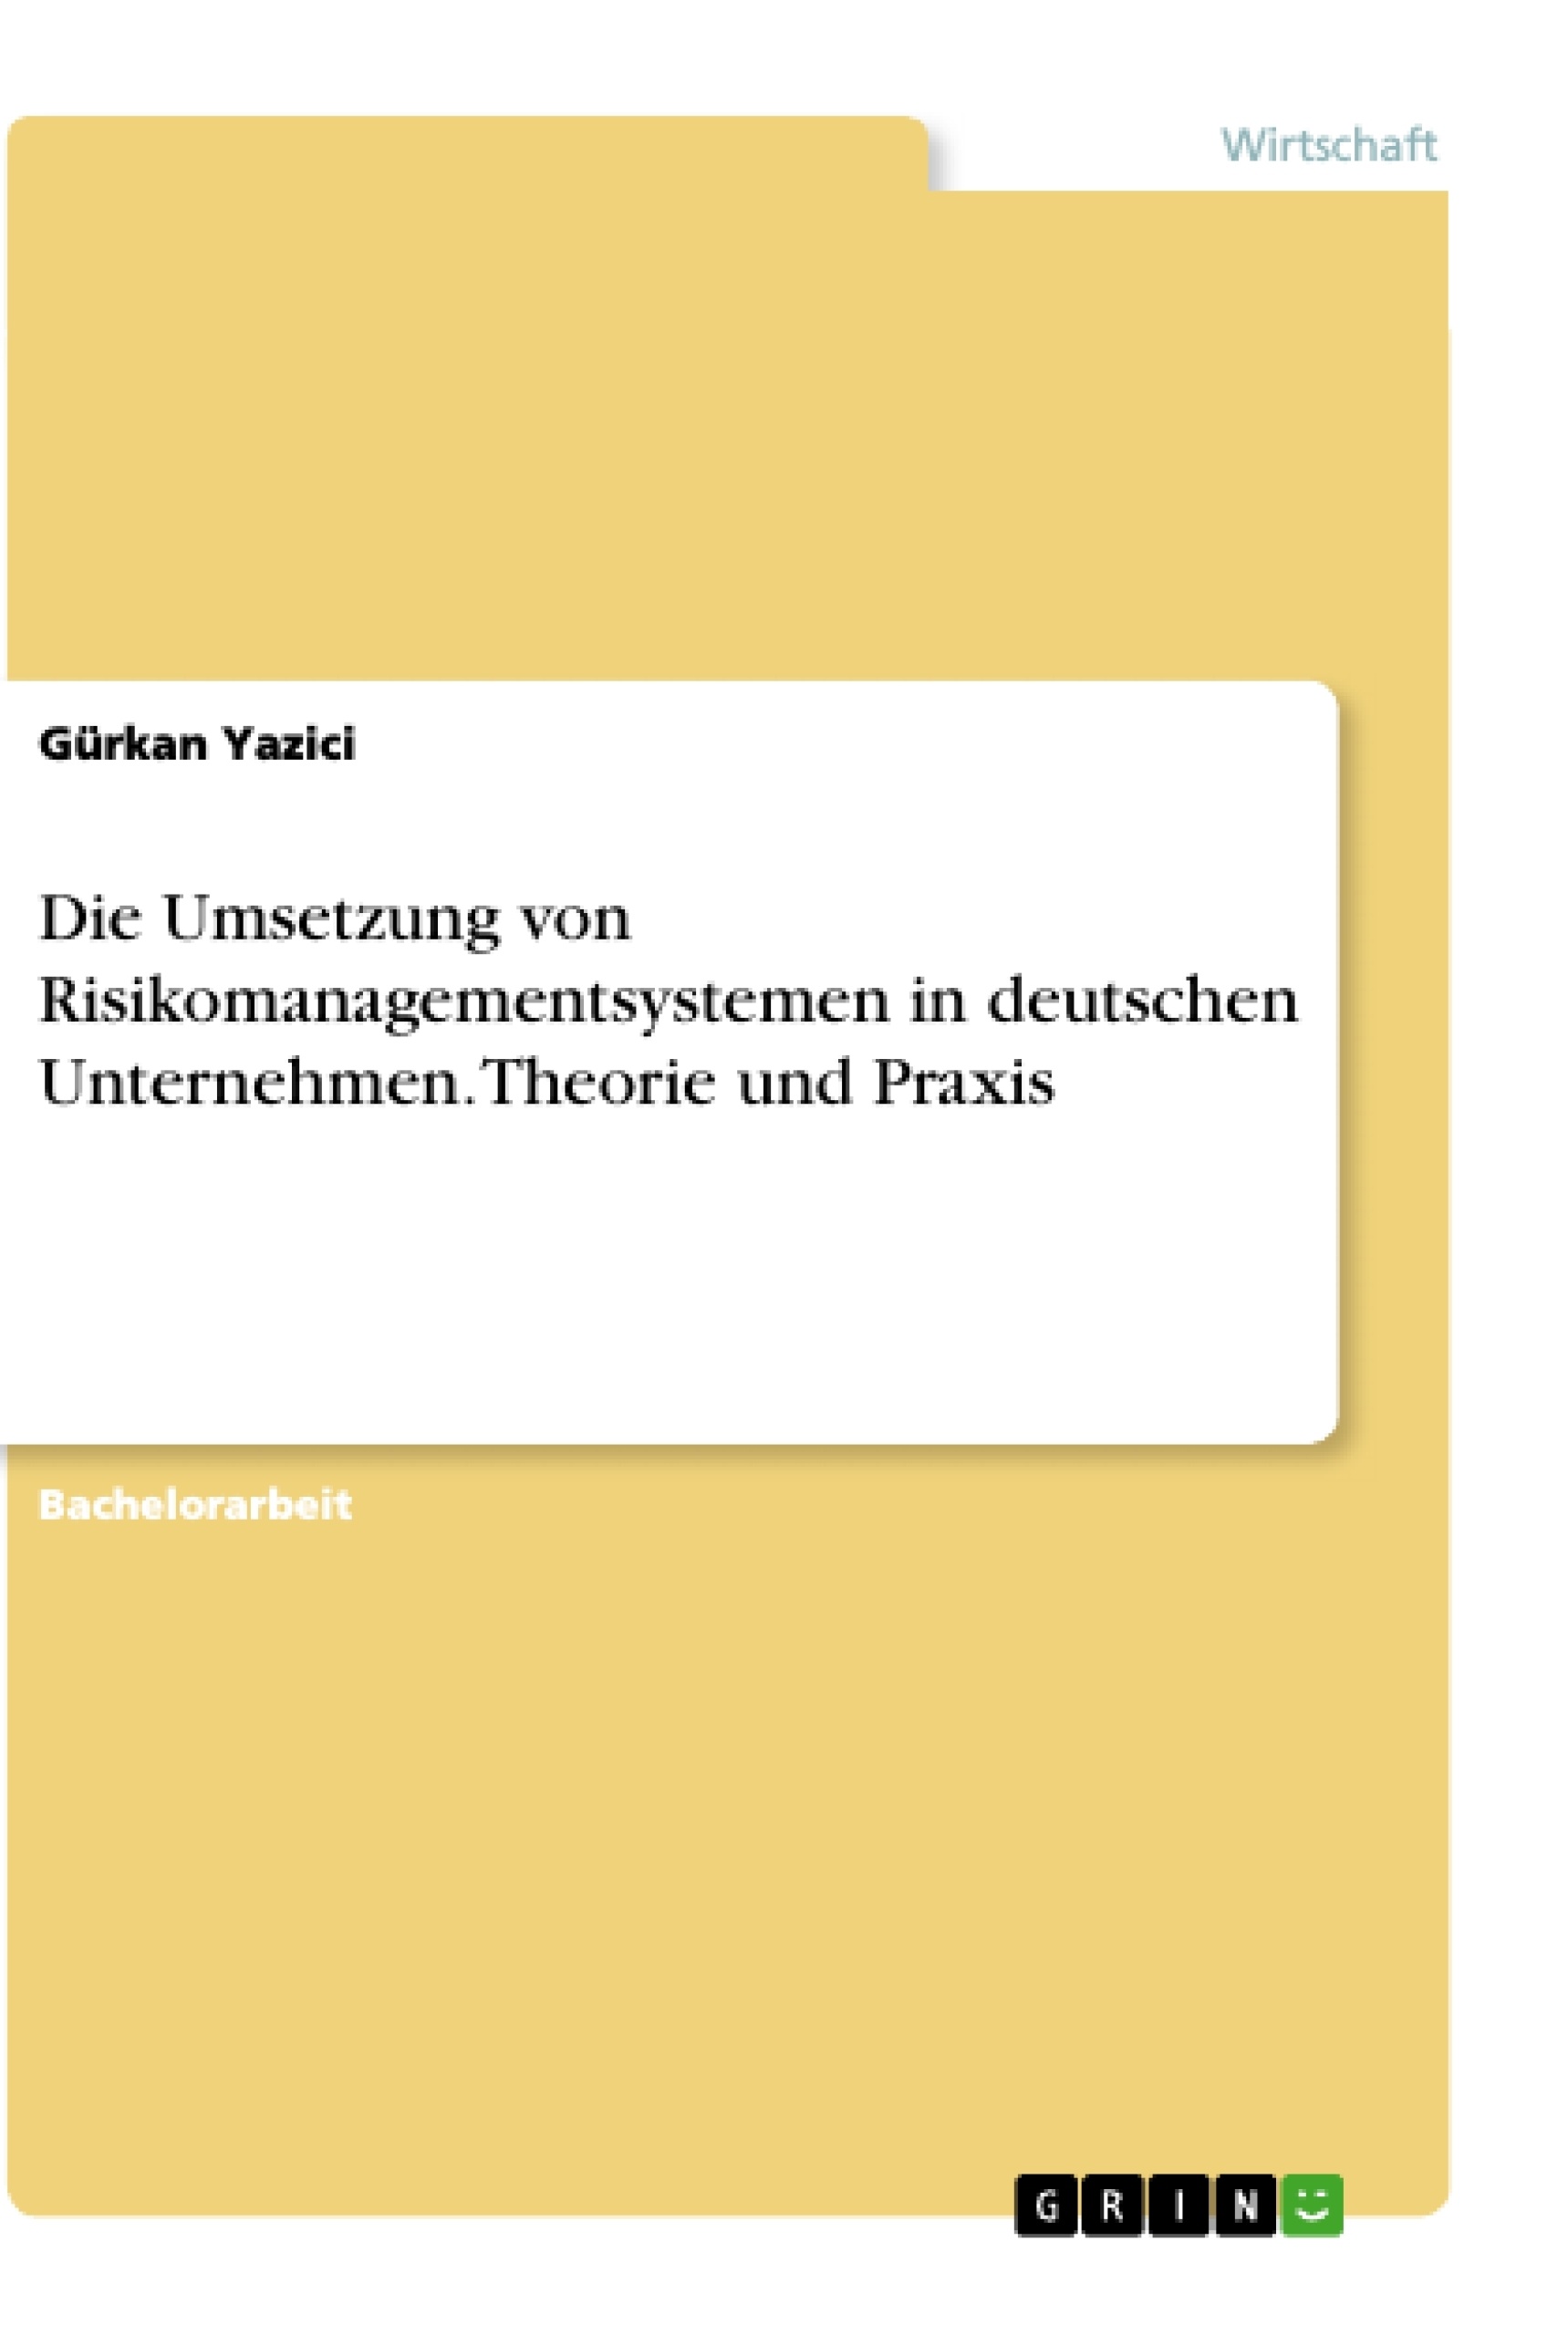 Titre: Die Umsetzung von Risikomanagementsystemen in deutschen Unternehmen. Theorie und Praxis